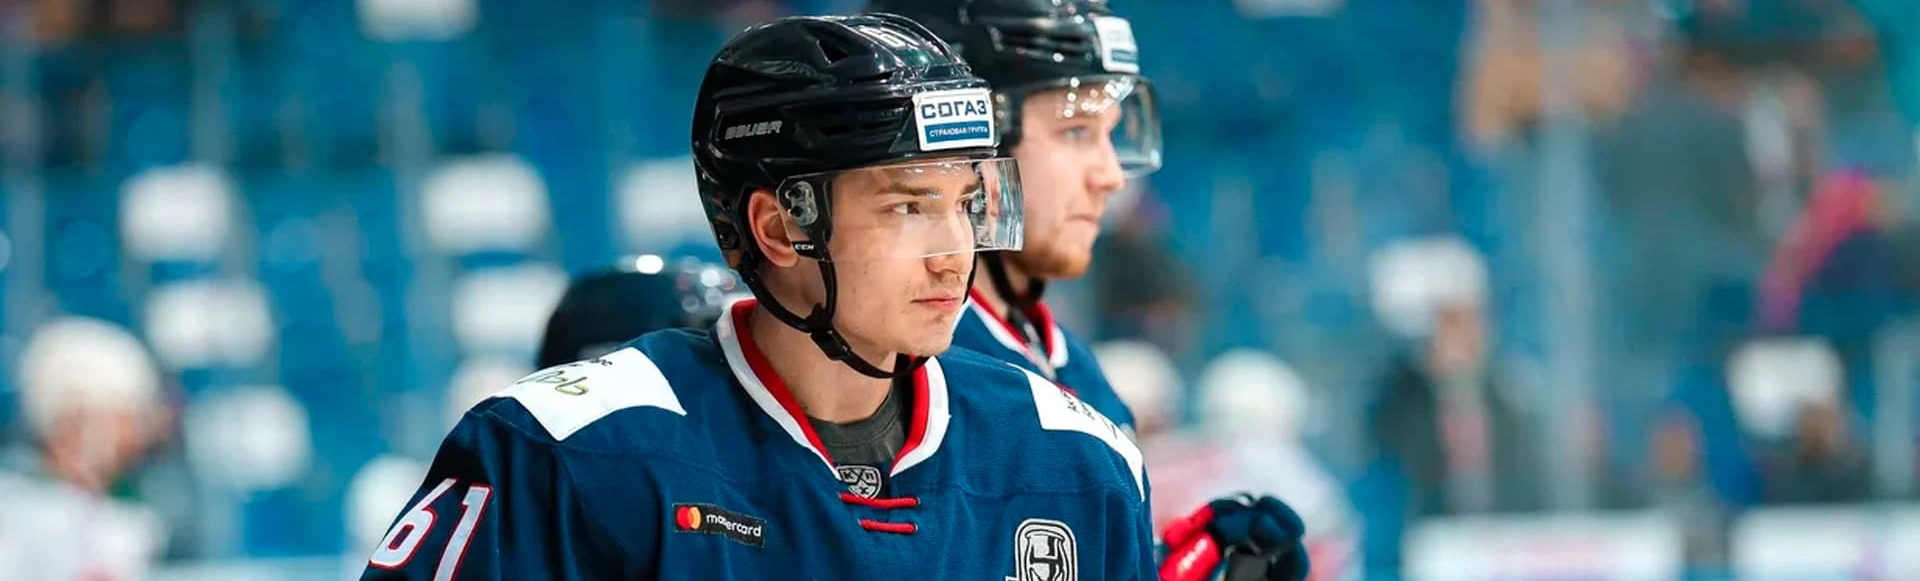 Форвард СКА Хайруллин назвал основных конкурентов команды в КХЛ